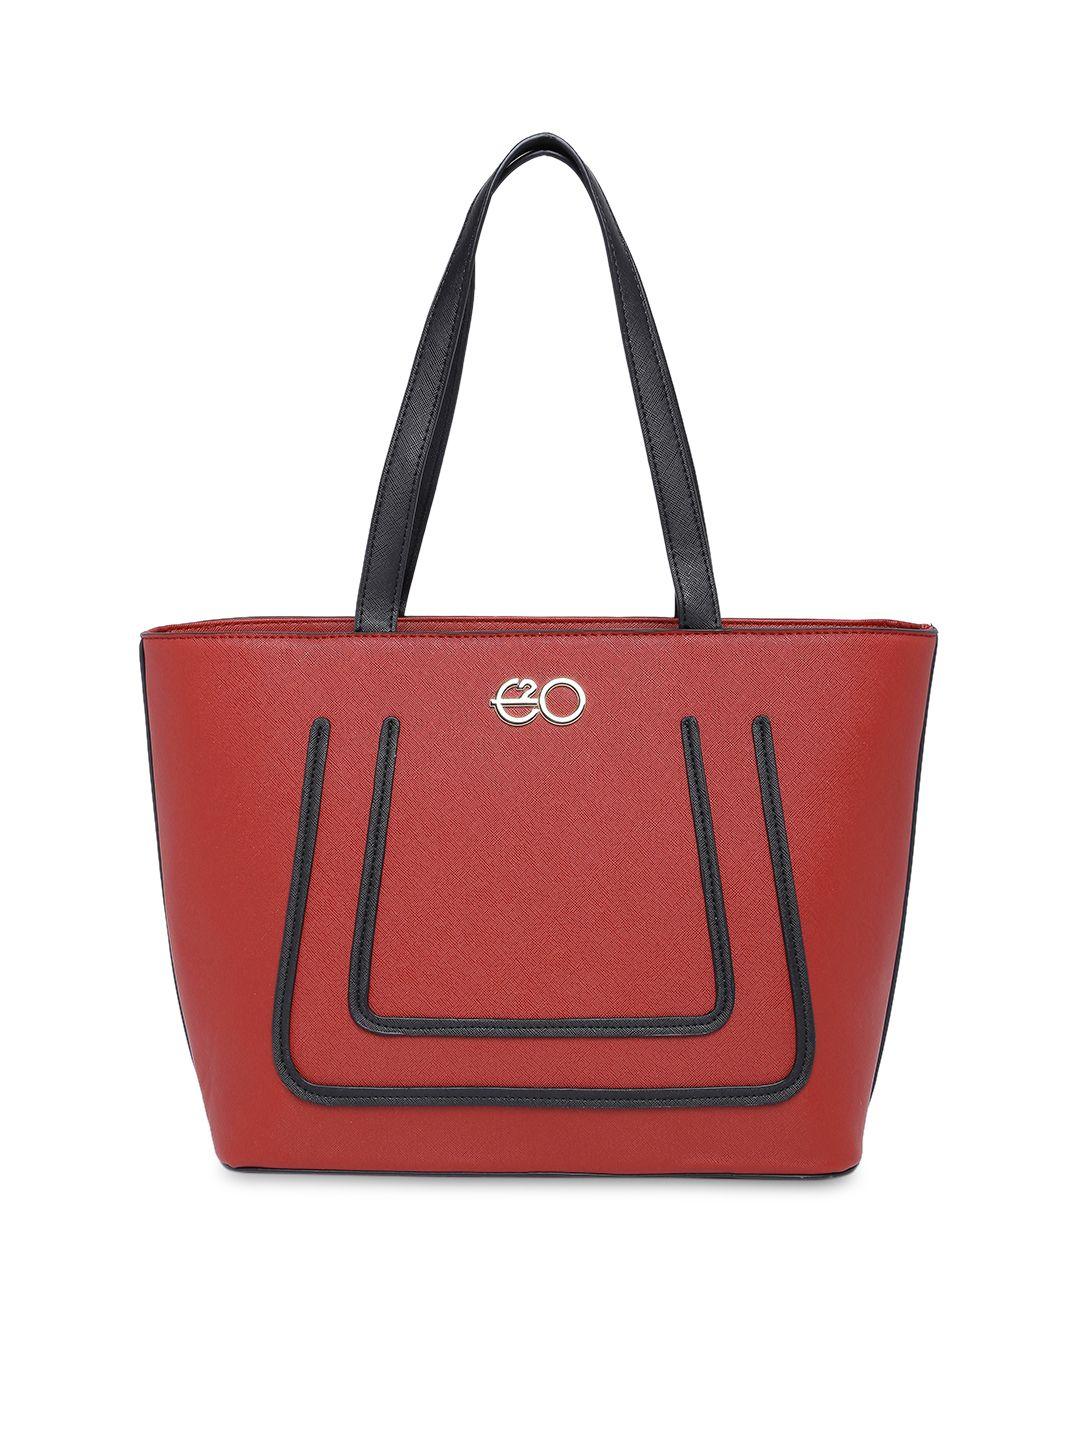 e2o red solid shoulder bag